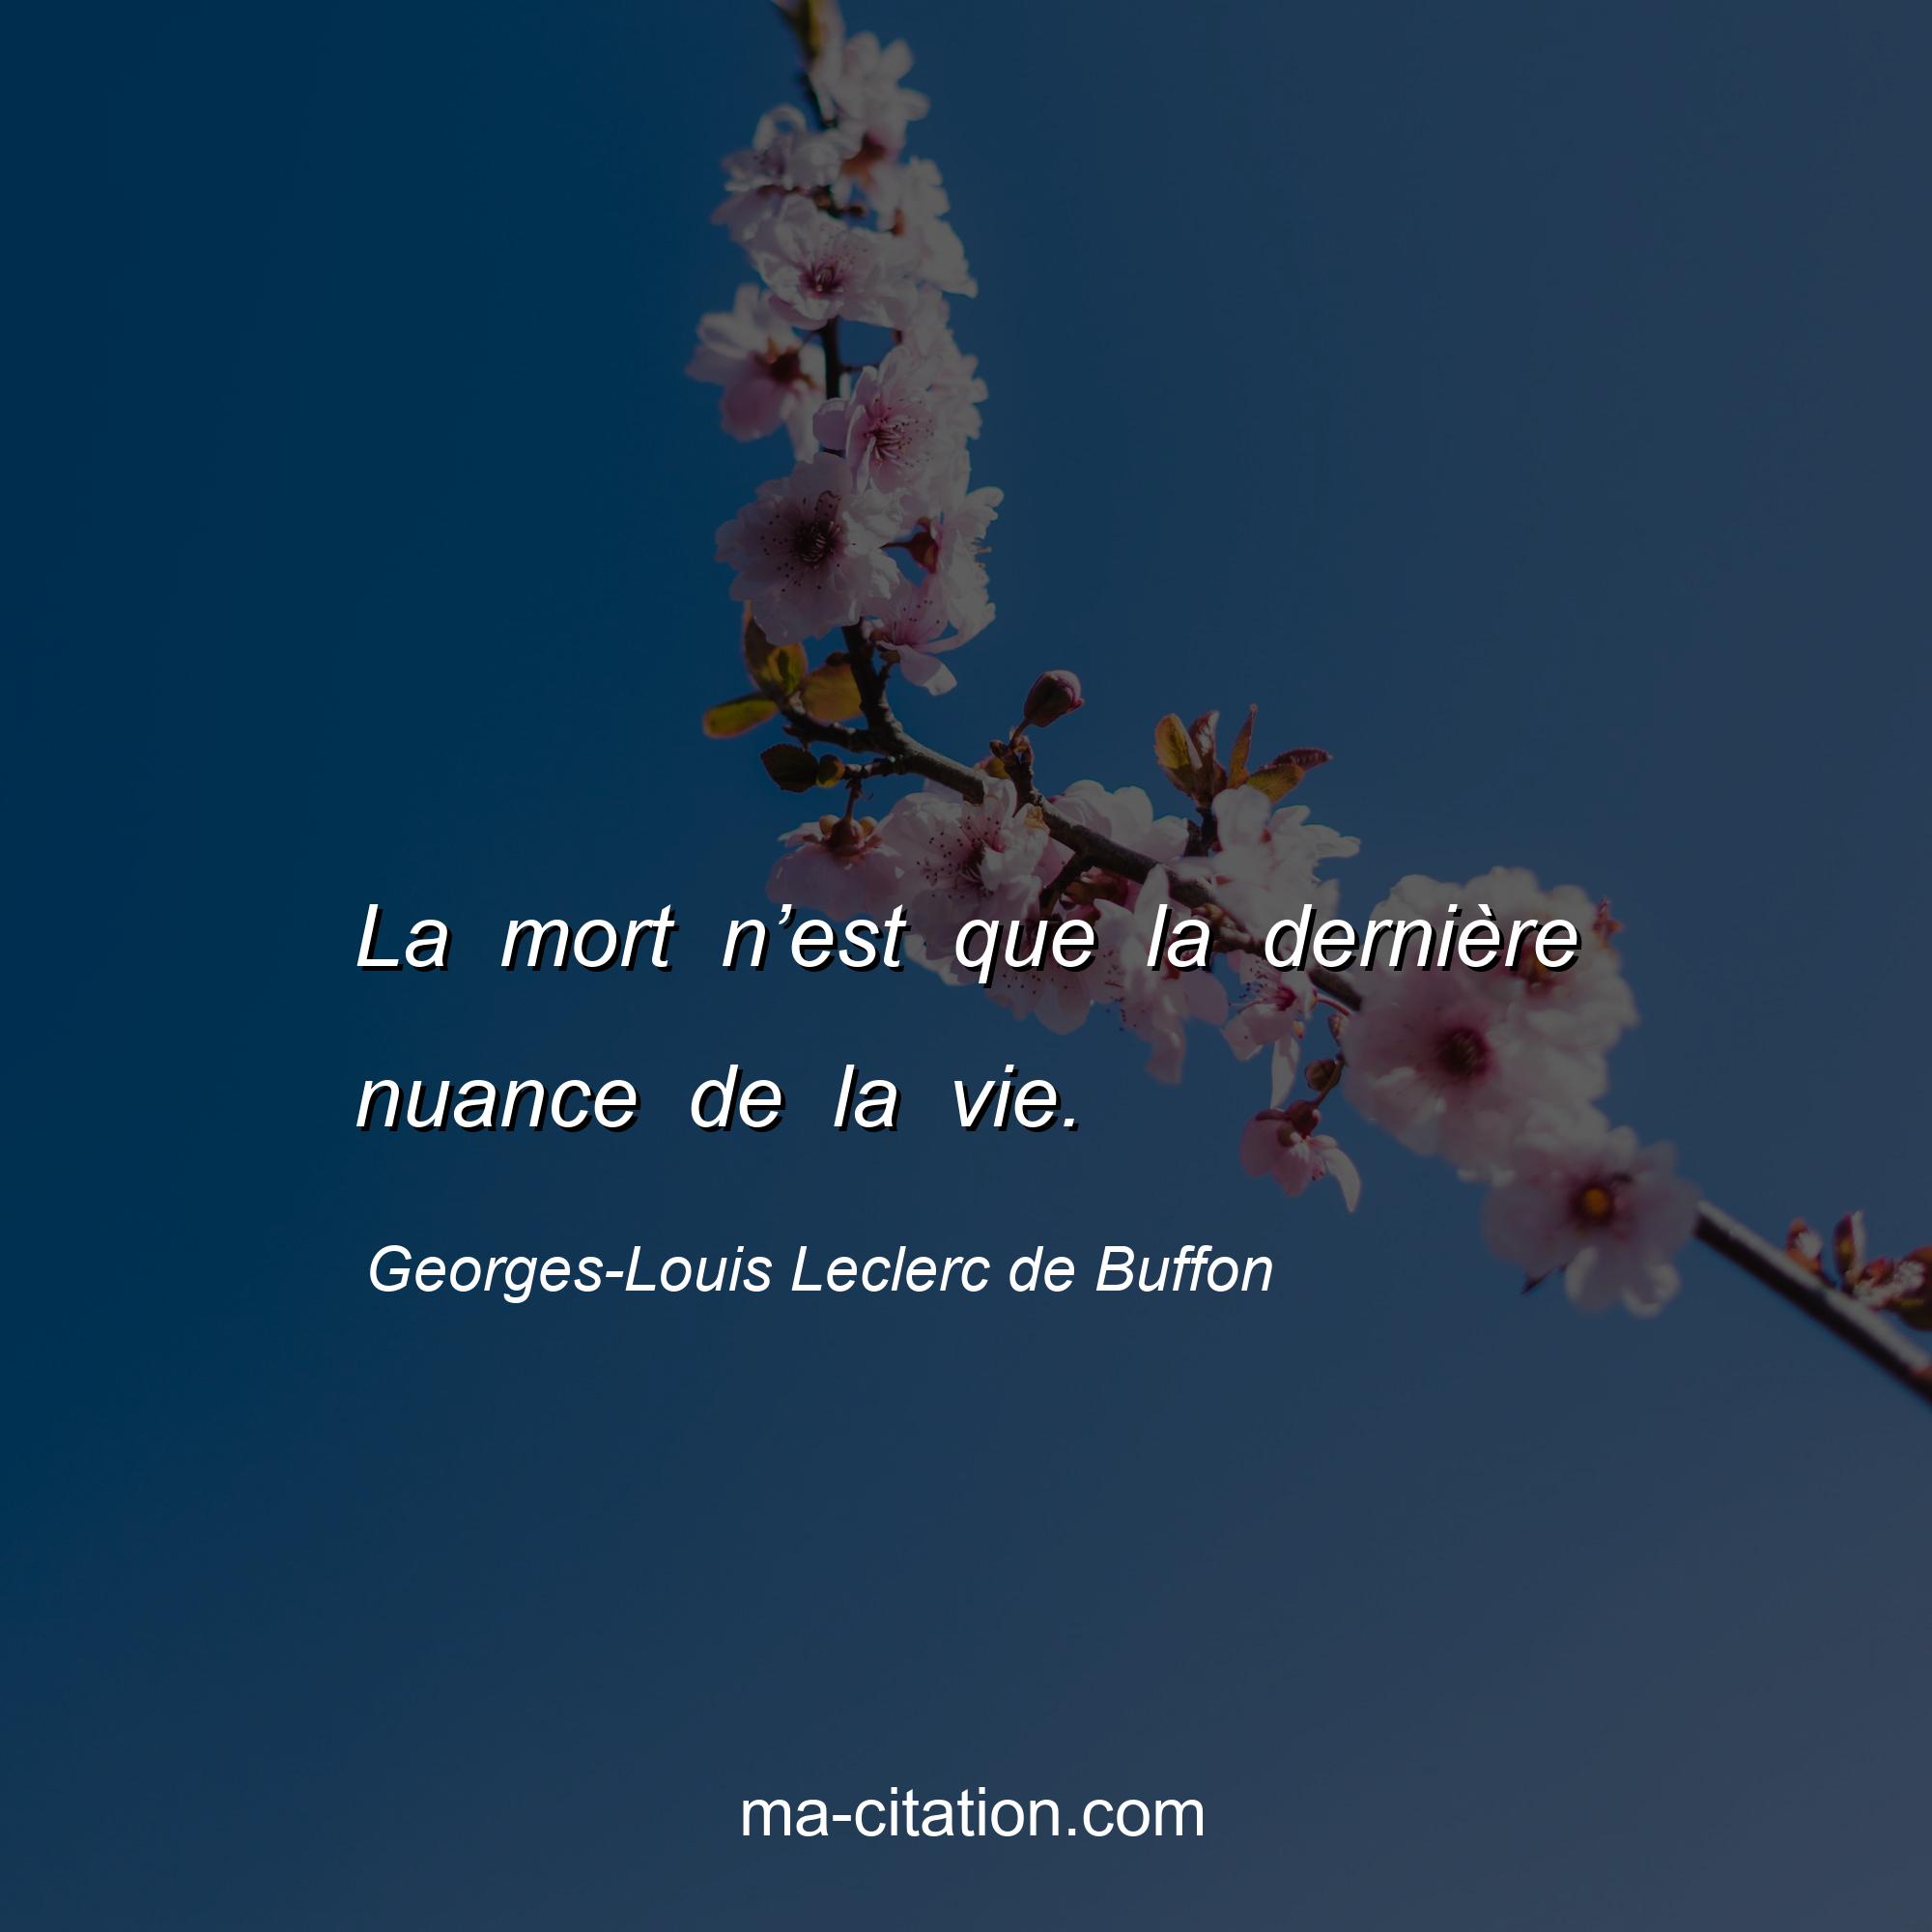 Georges-Louis Leclerc de Buffon : La mort n’est que la dernière nuance de la vie.